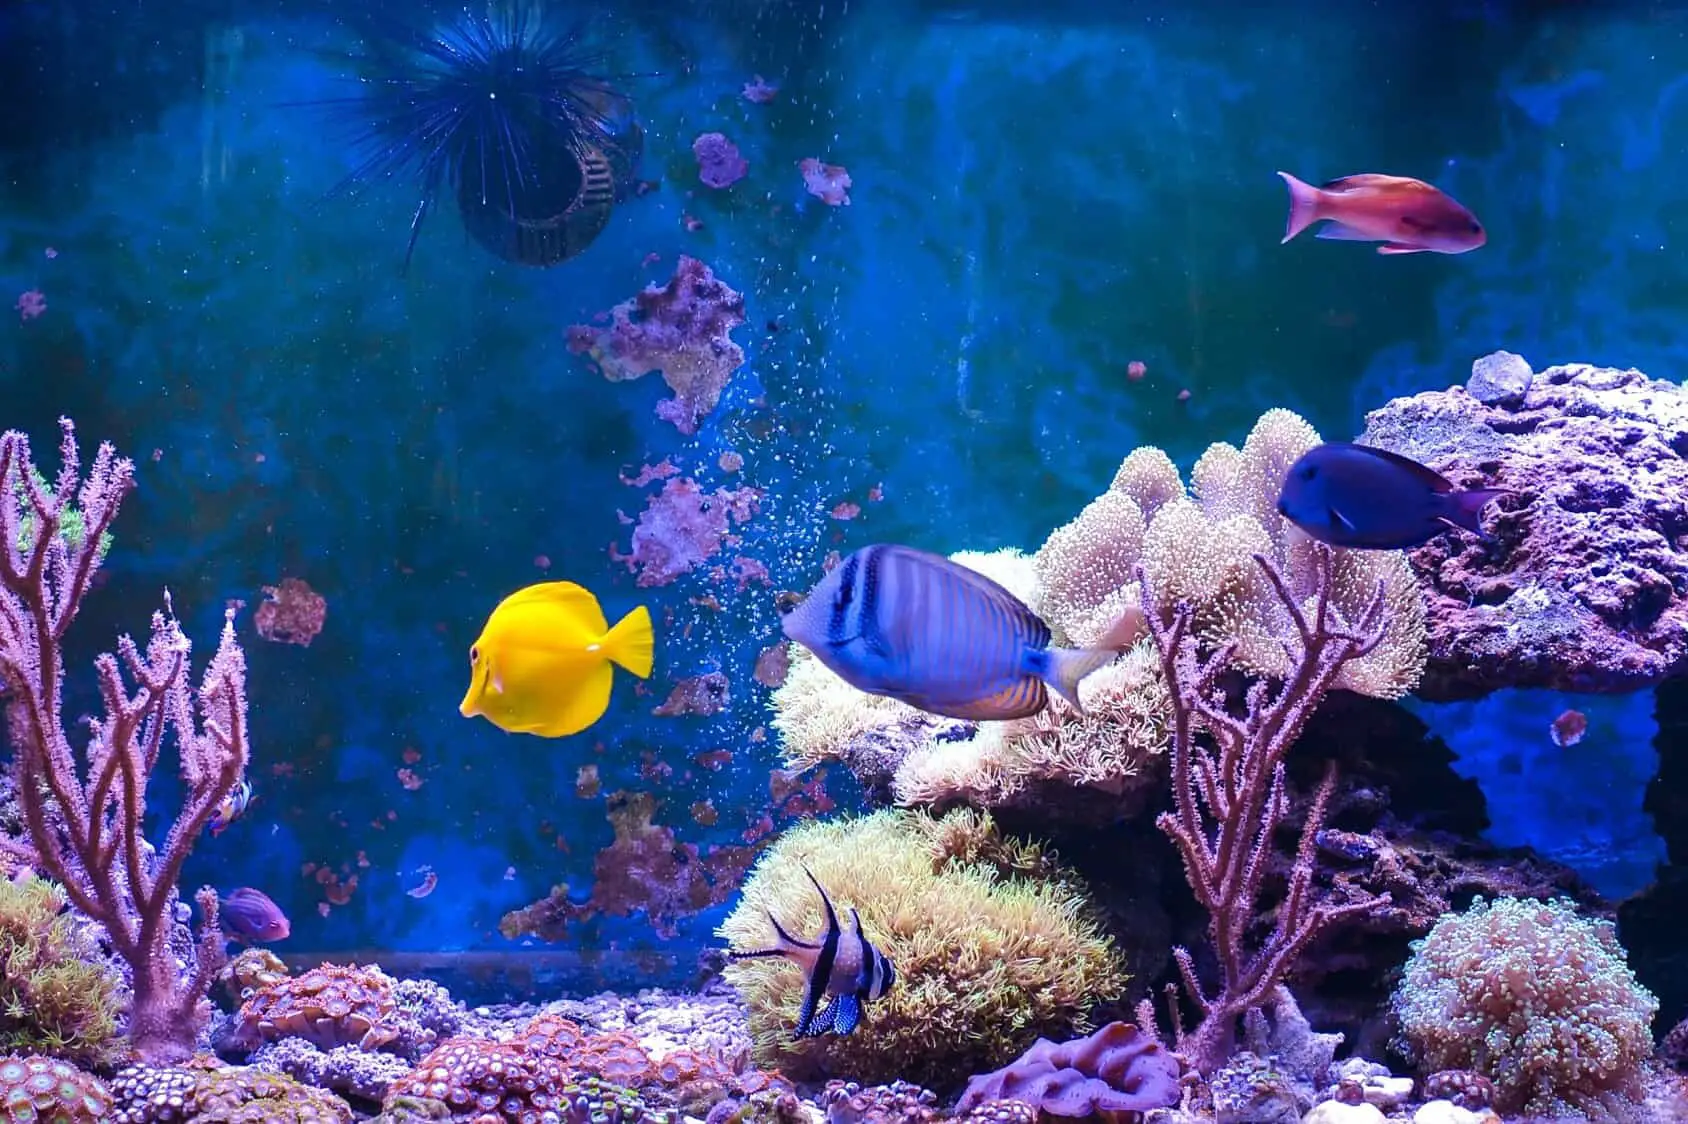 common saltwater aquarium fish